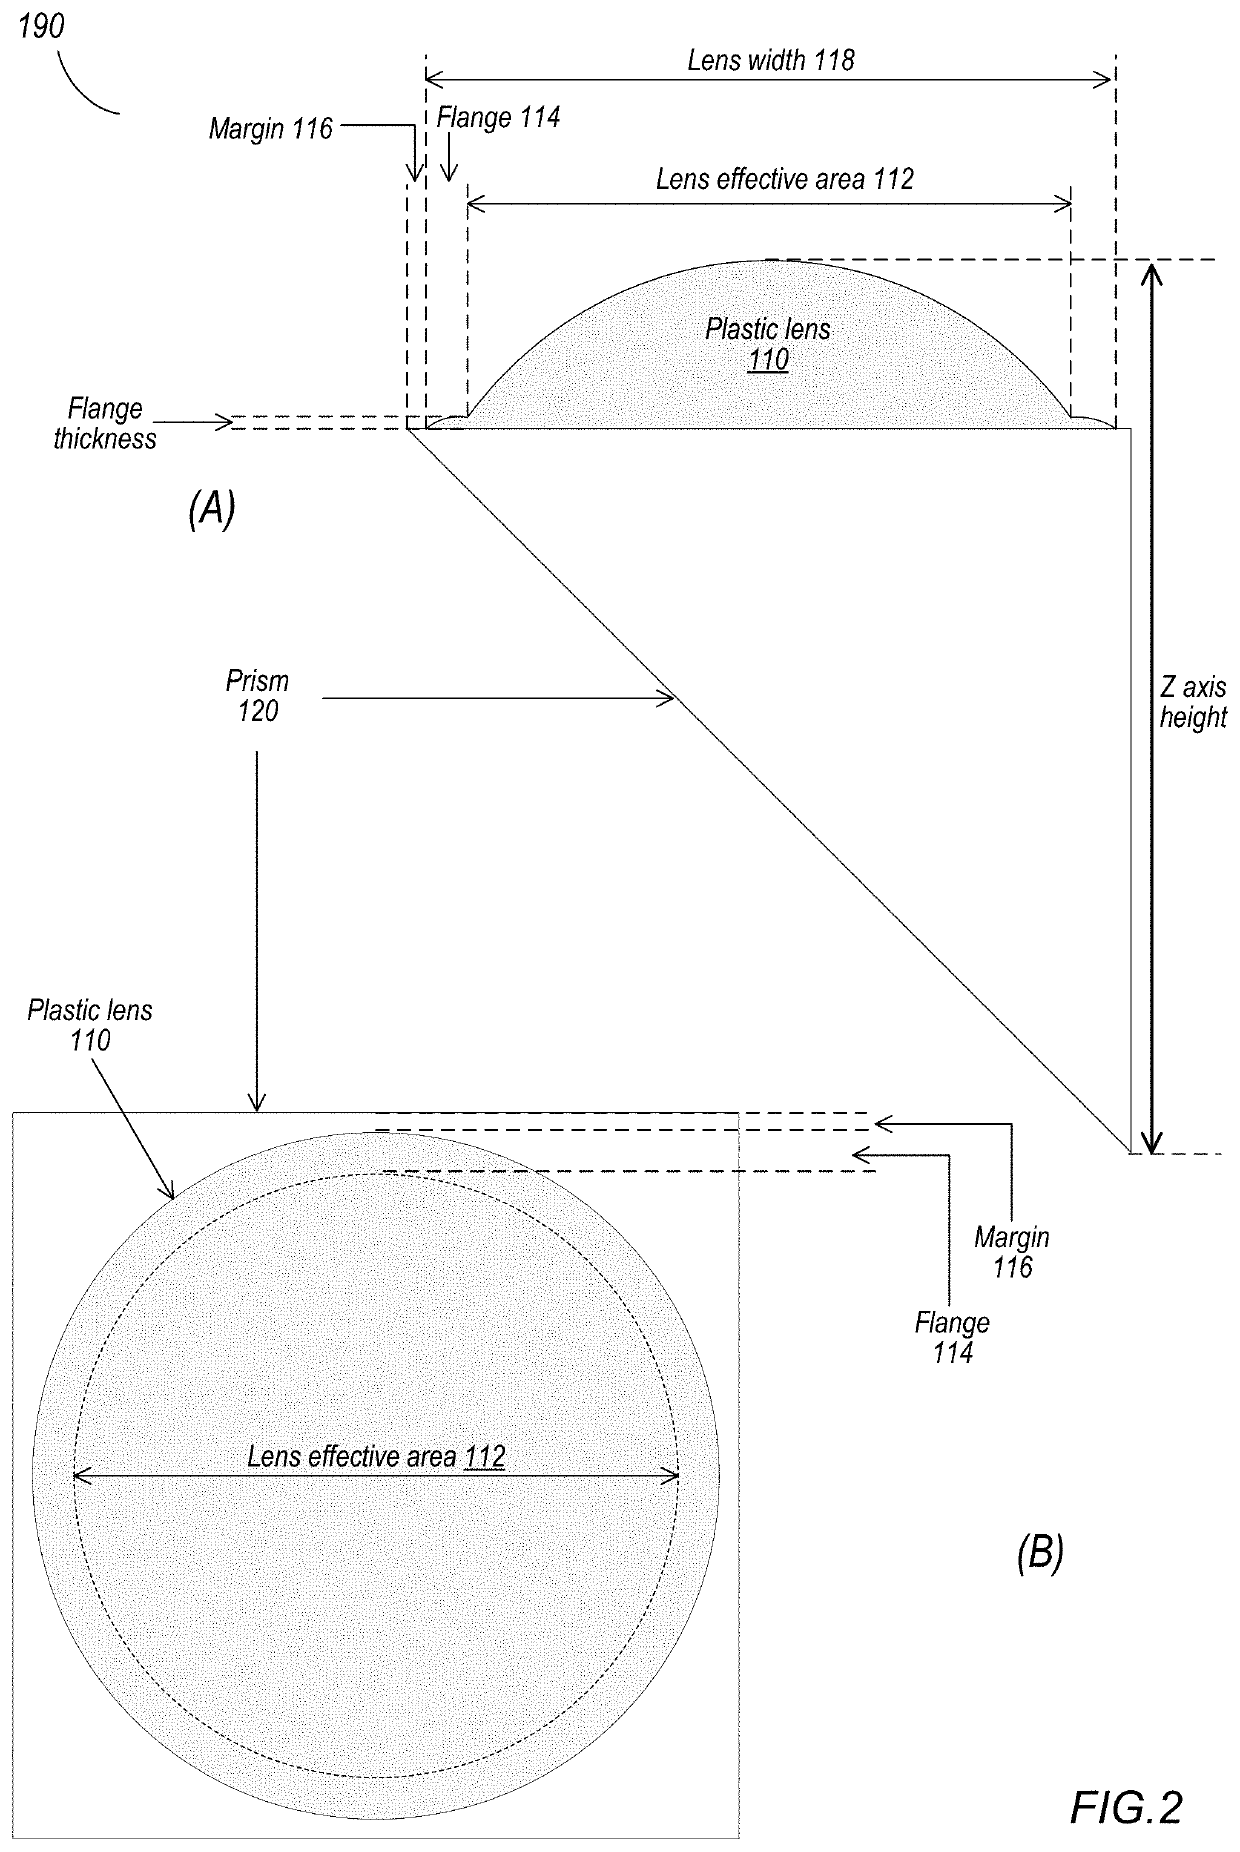 Power prism for folded lenses